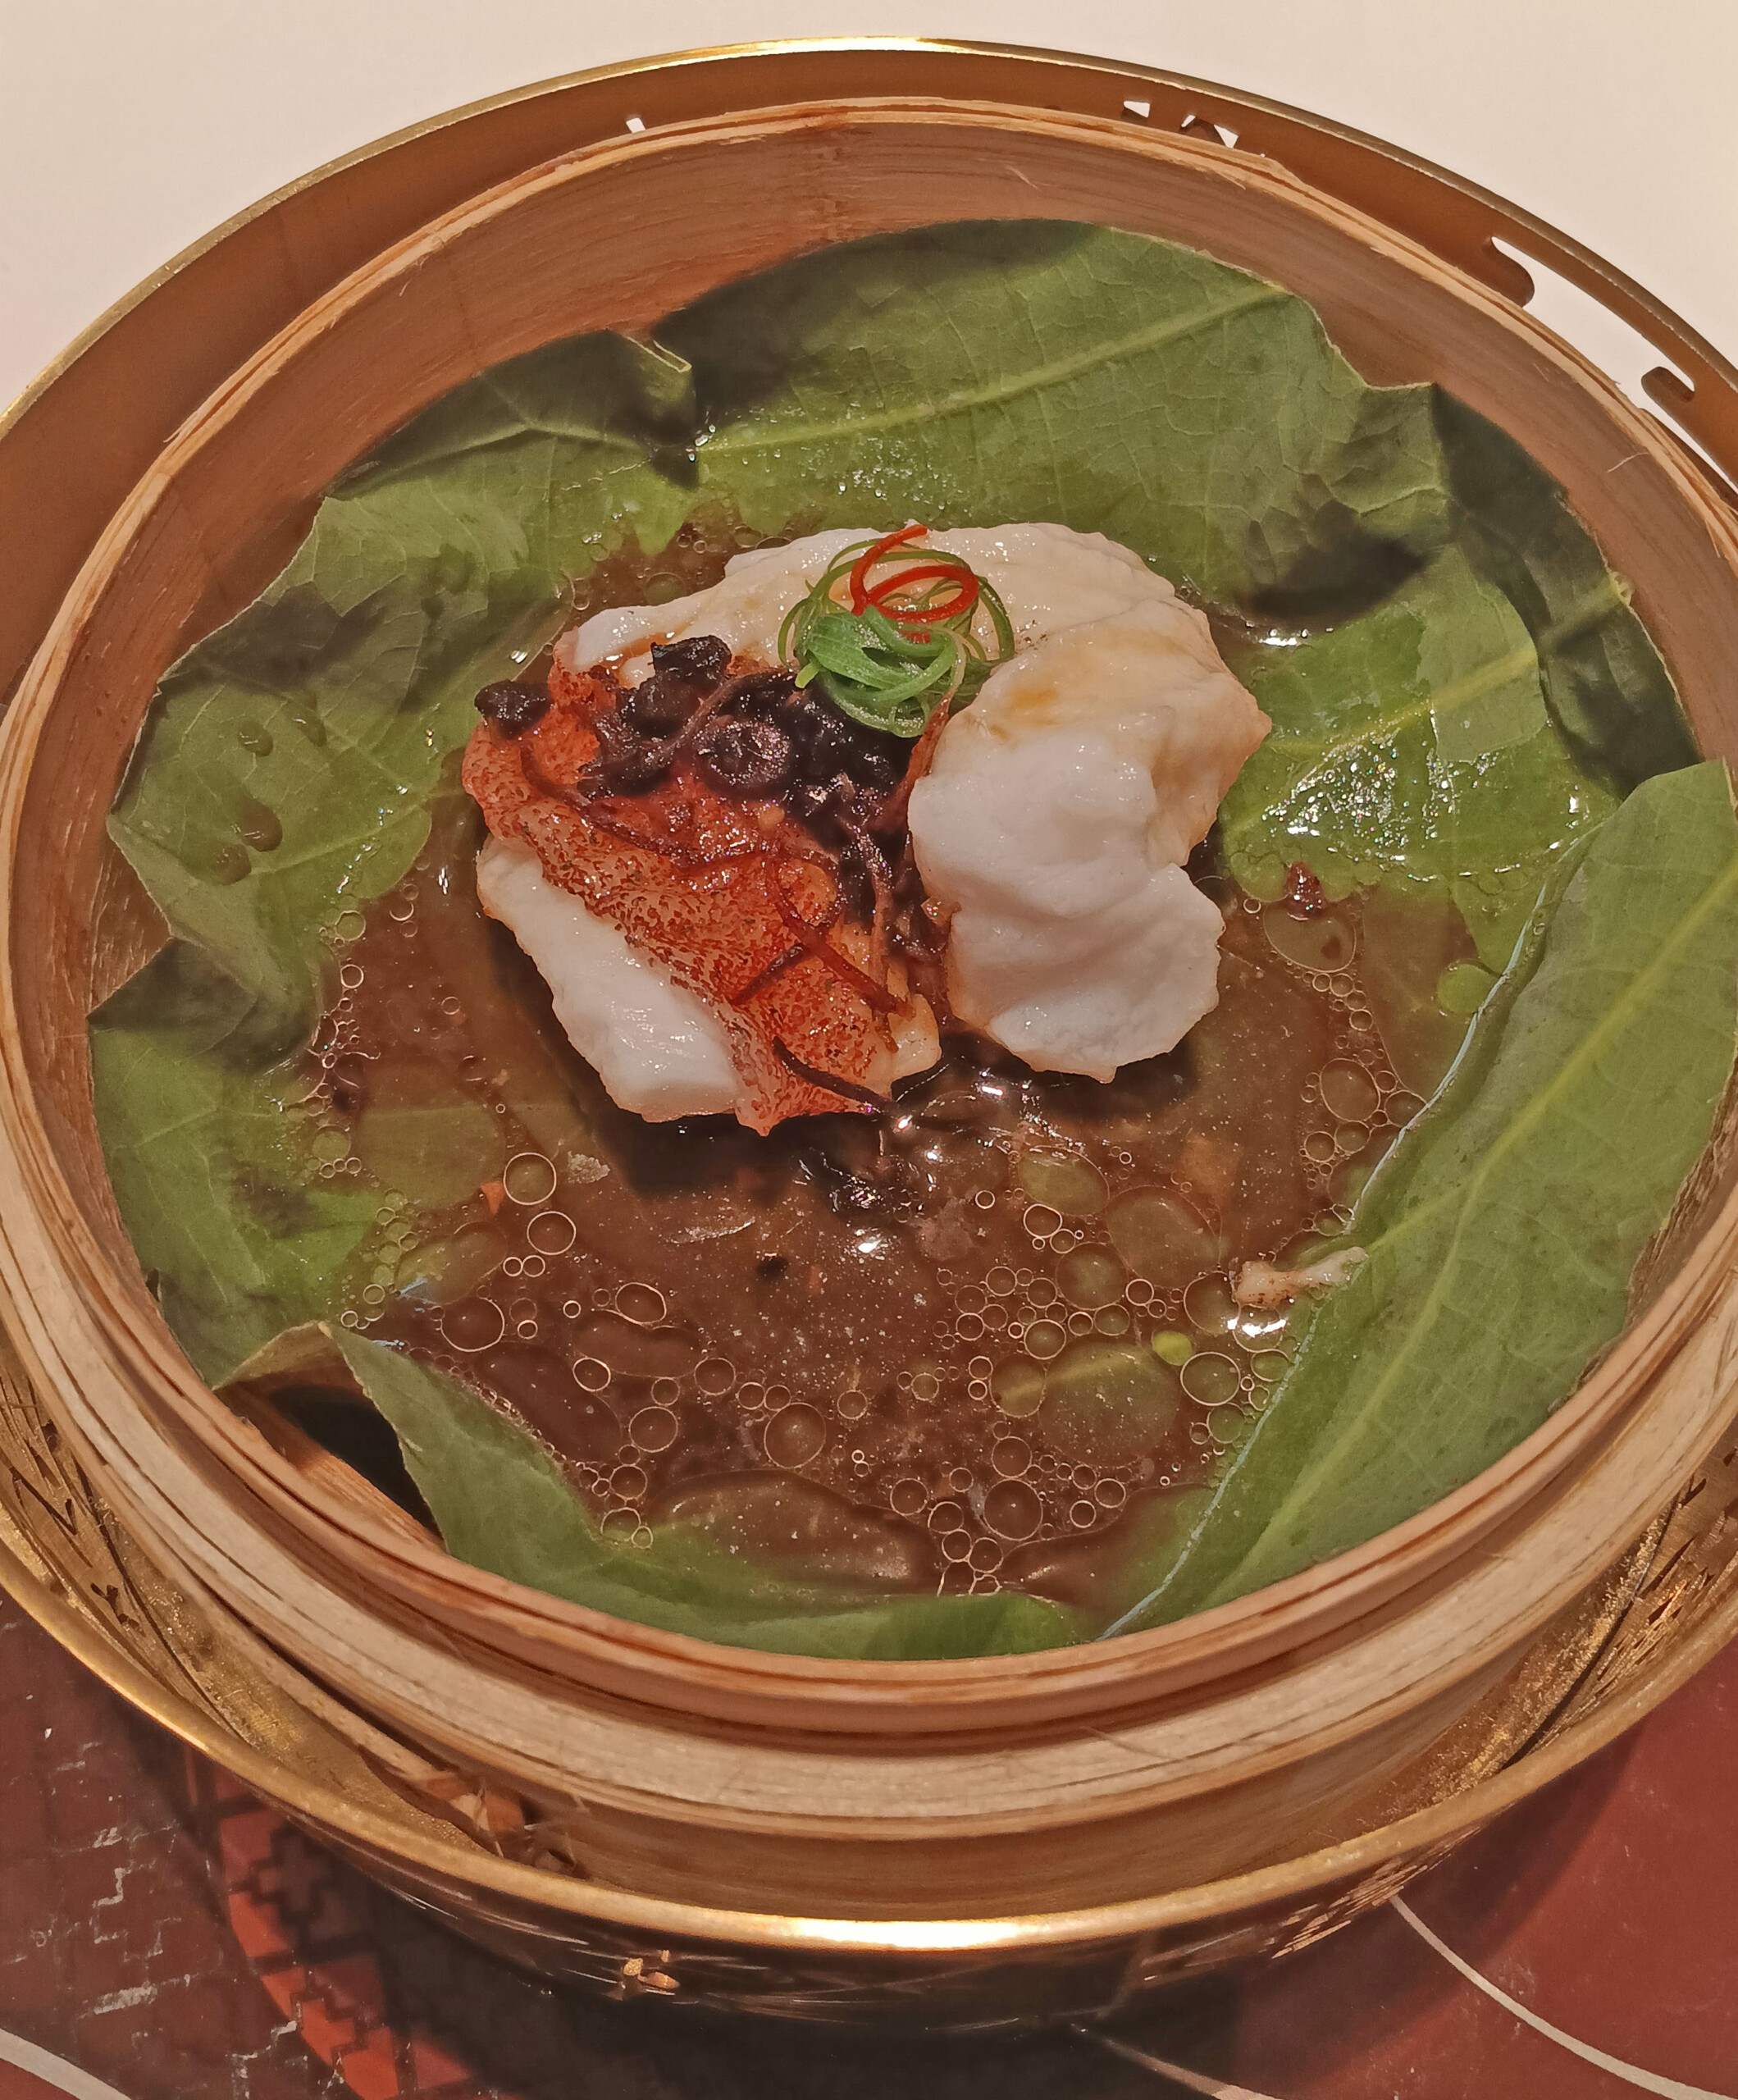 Steamed grouper filet with pickled olives served in a lotus leaf